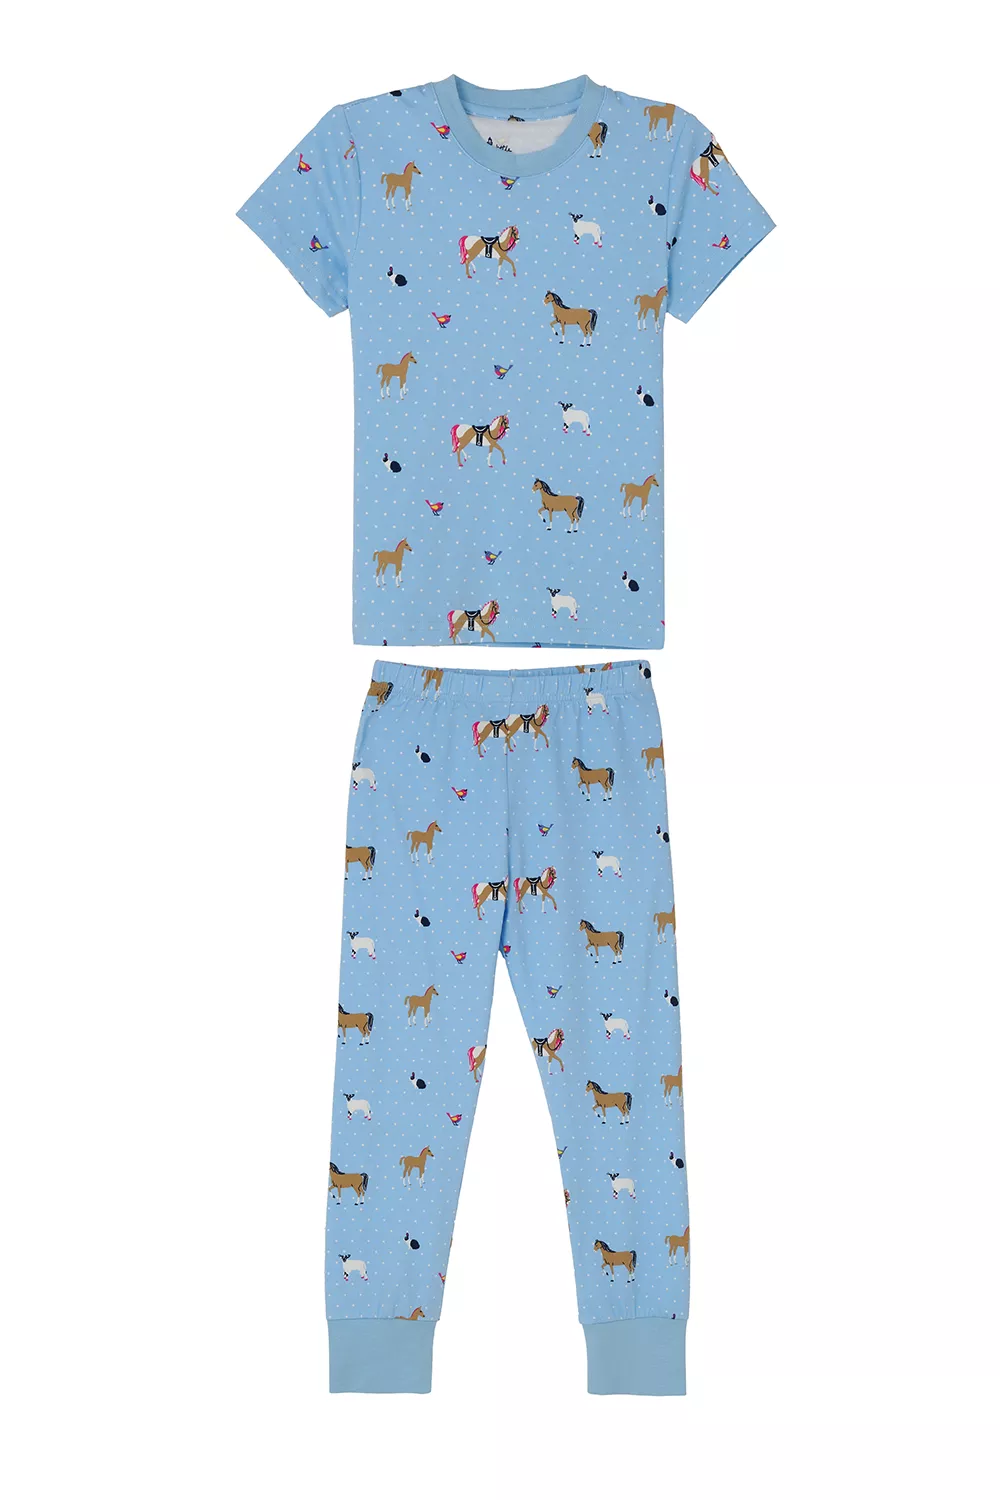 Girls Pyjamas Blue Animal Print 5-6yrs